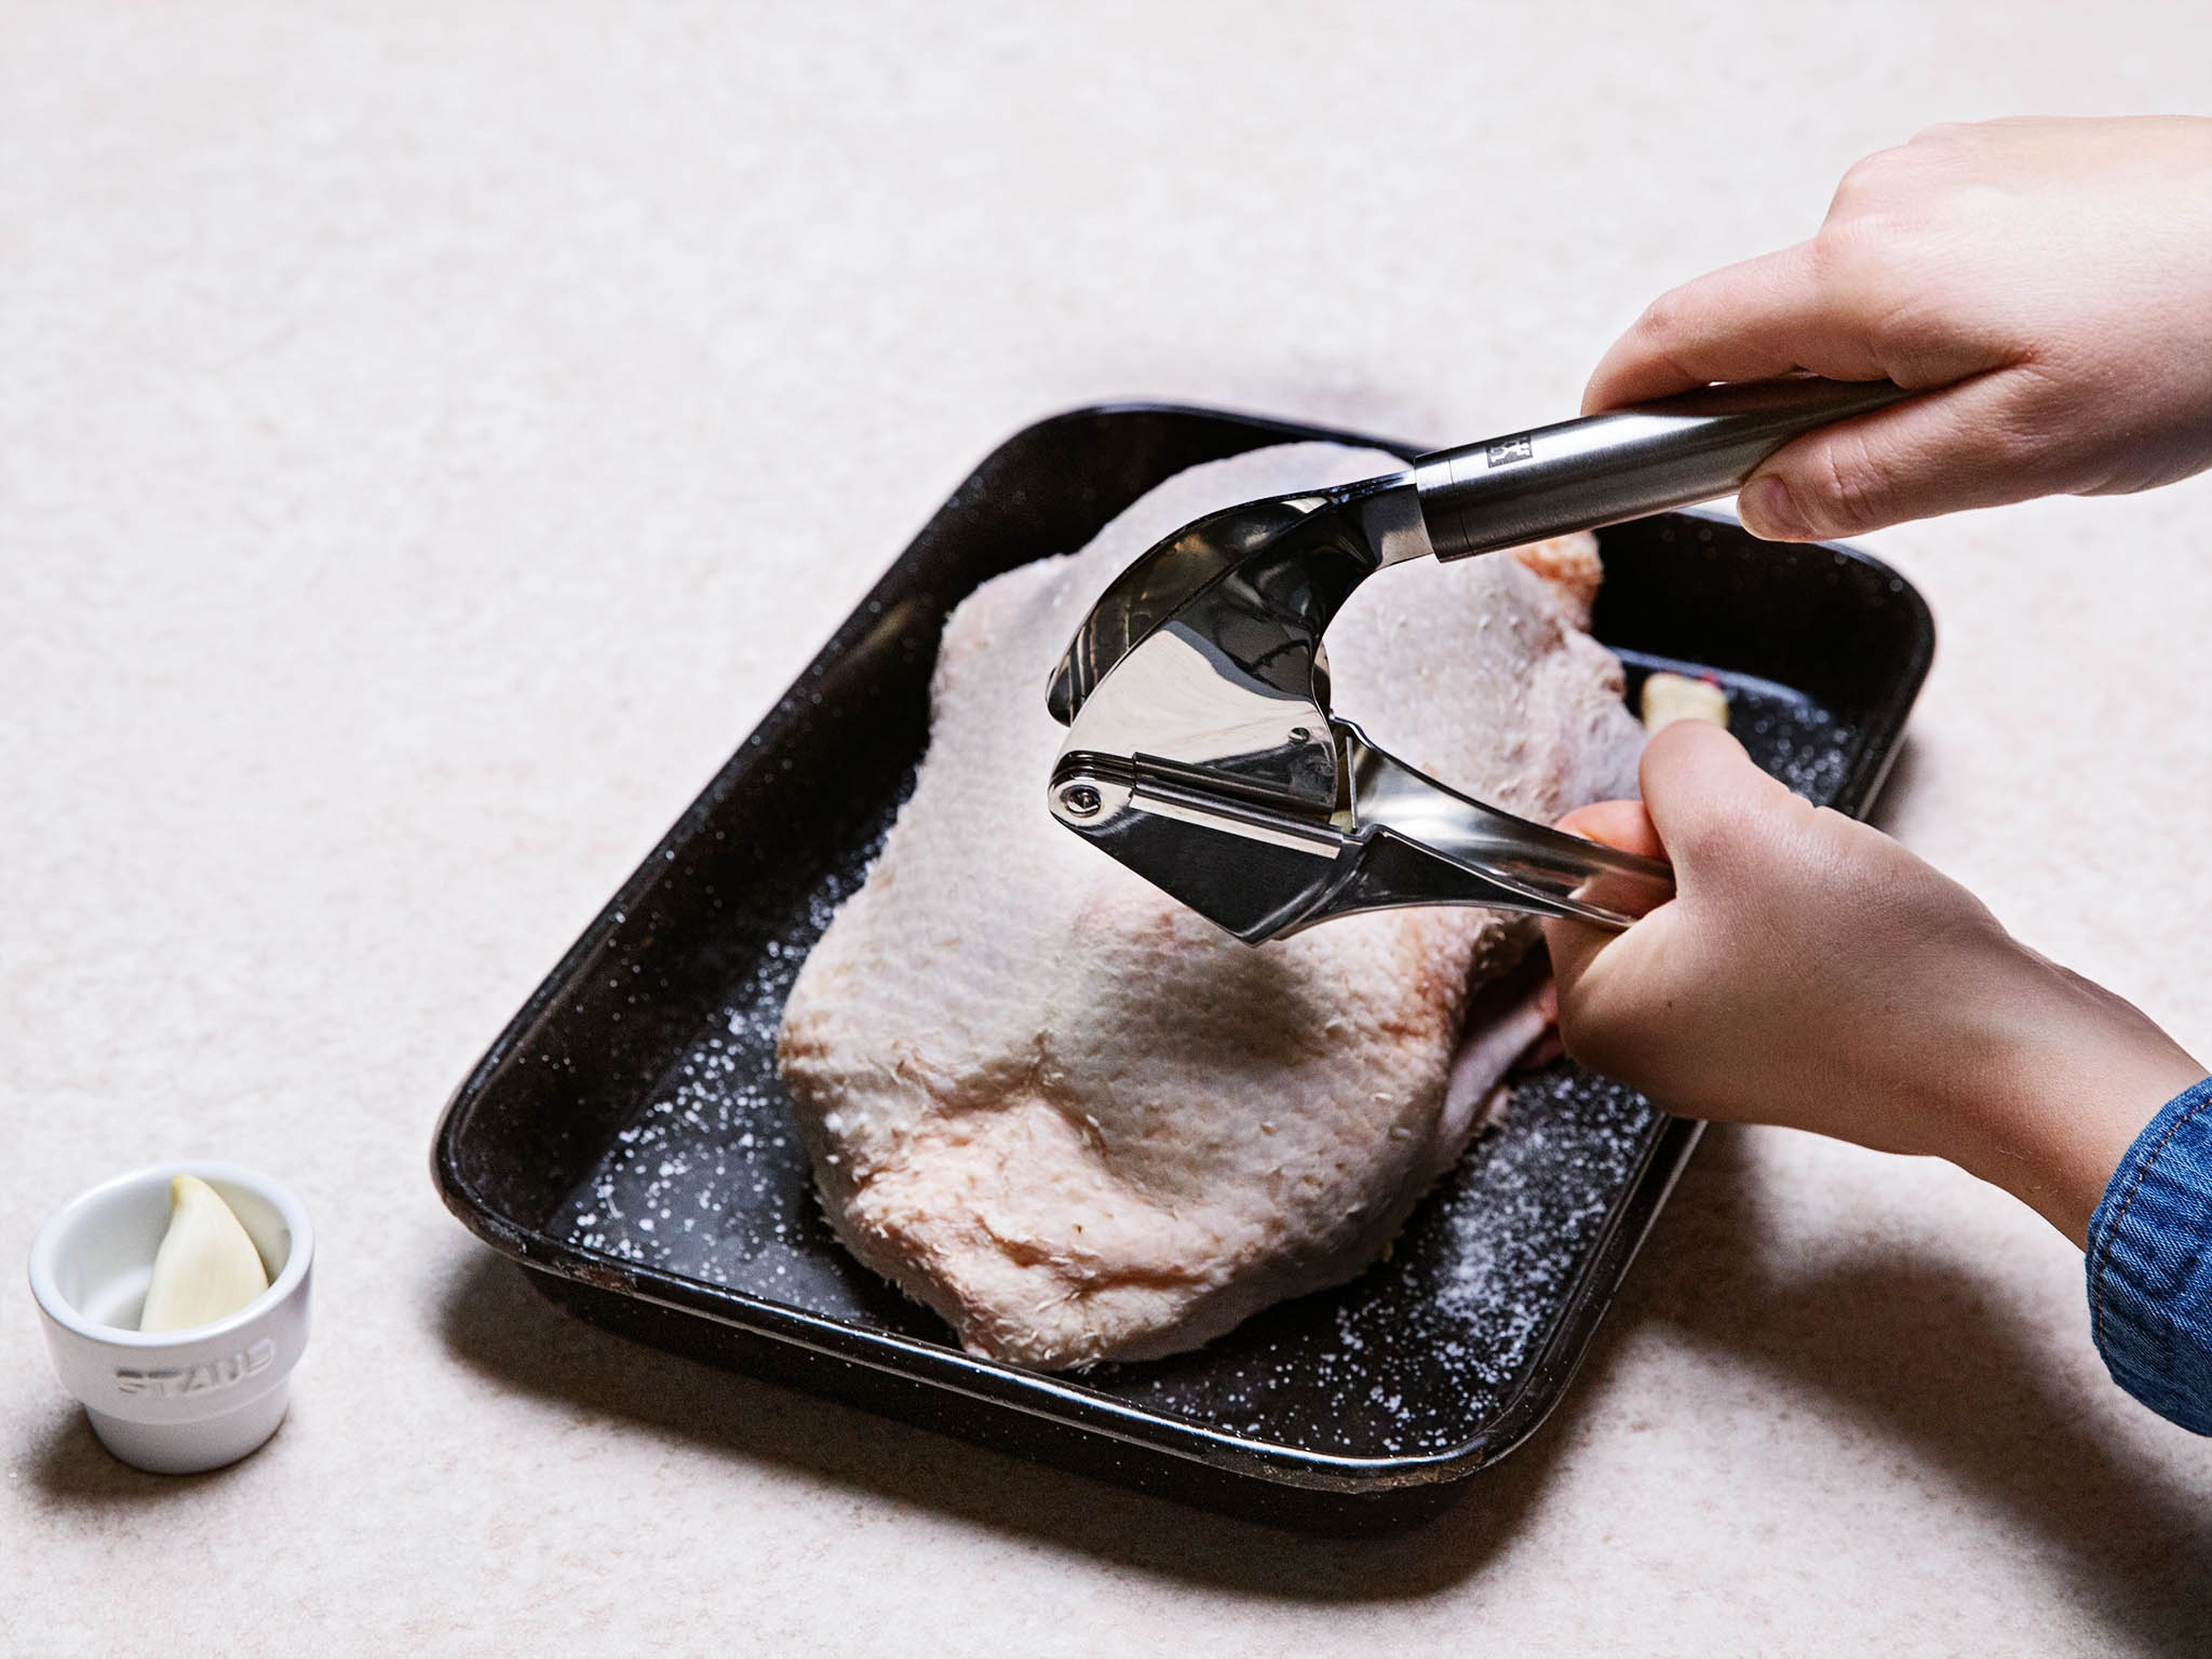 Den Ofen auf 180°C vorheizen. Die Ente trocken tupfen und ggf. Flügelenden und Sterz entfernen. Den Knoblauch pressen. Die Ente von allen Seiten salzen und mit Knoblauch einreiben.